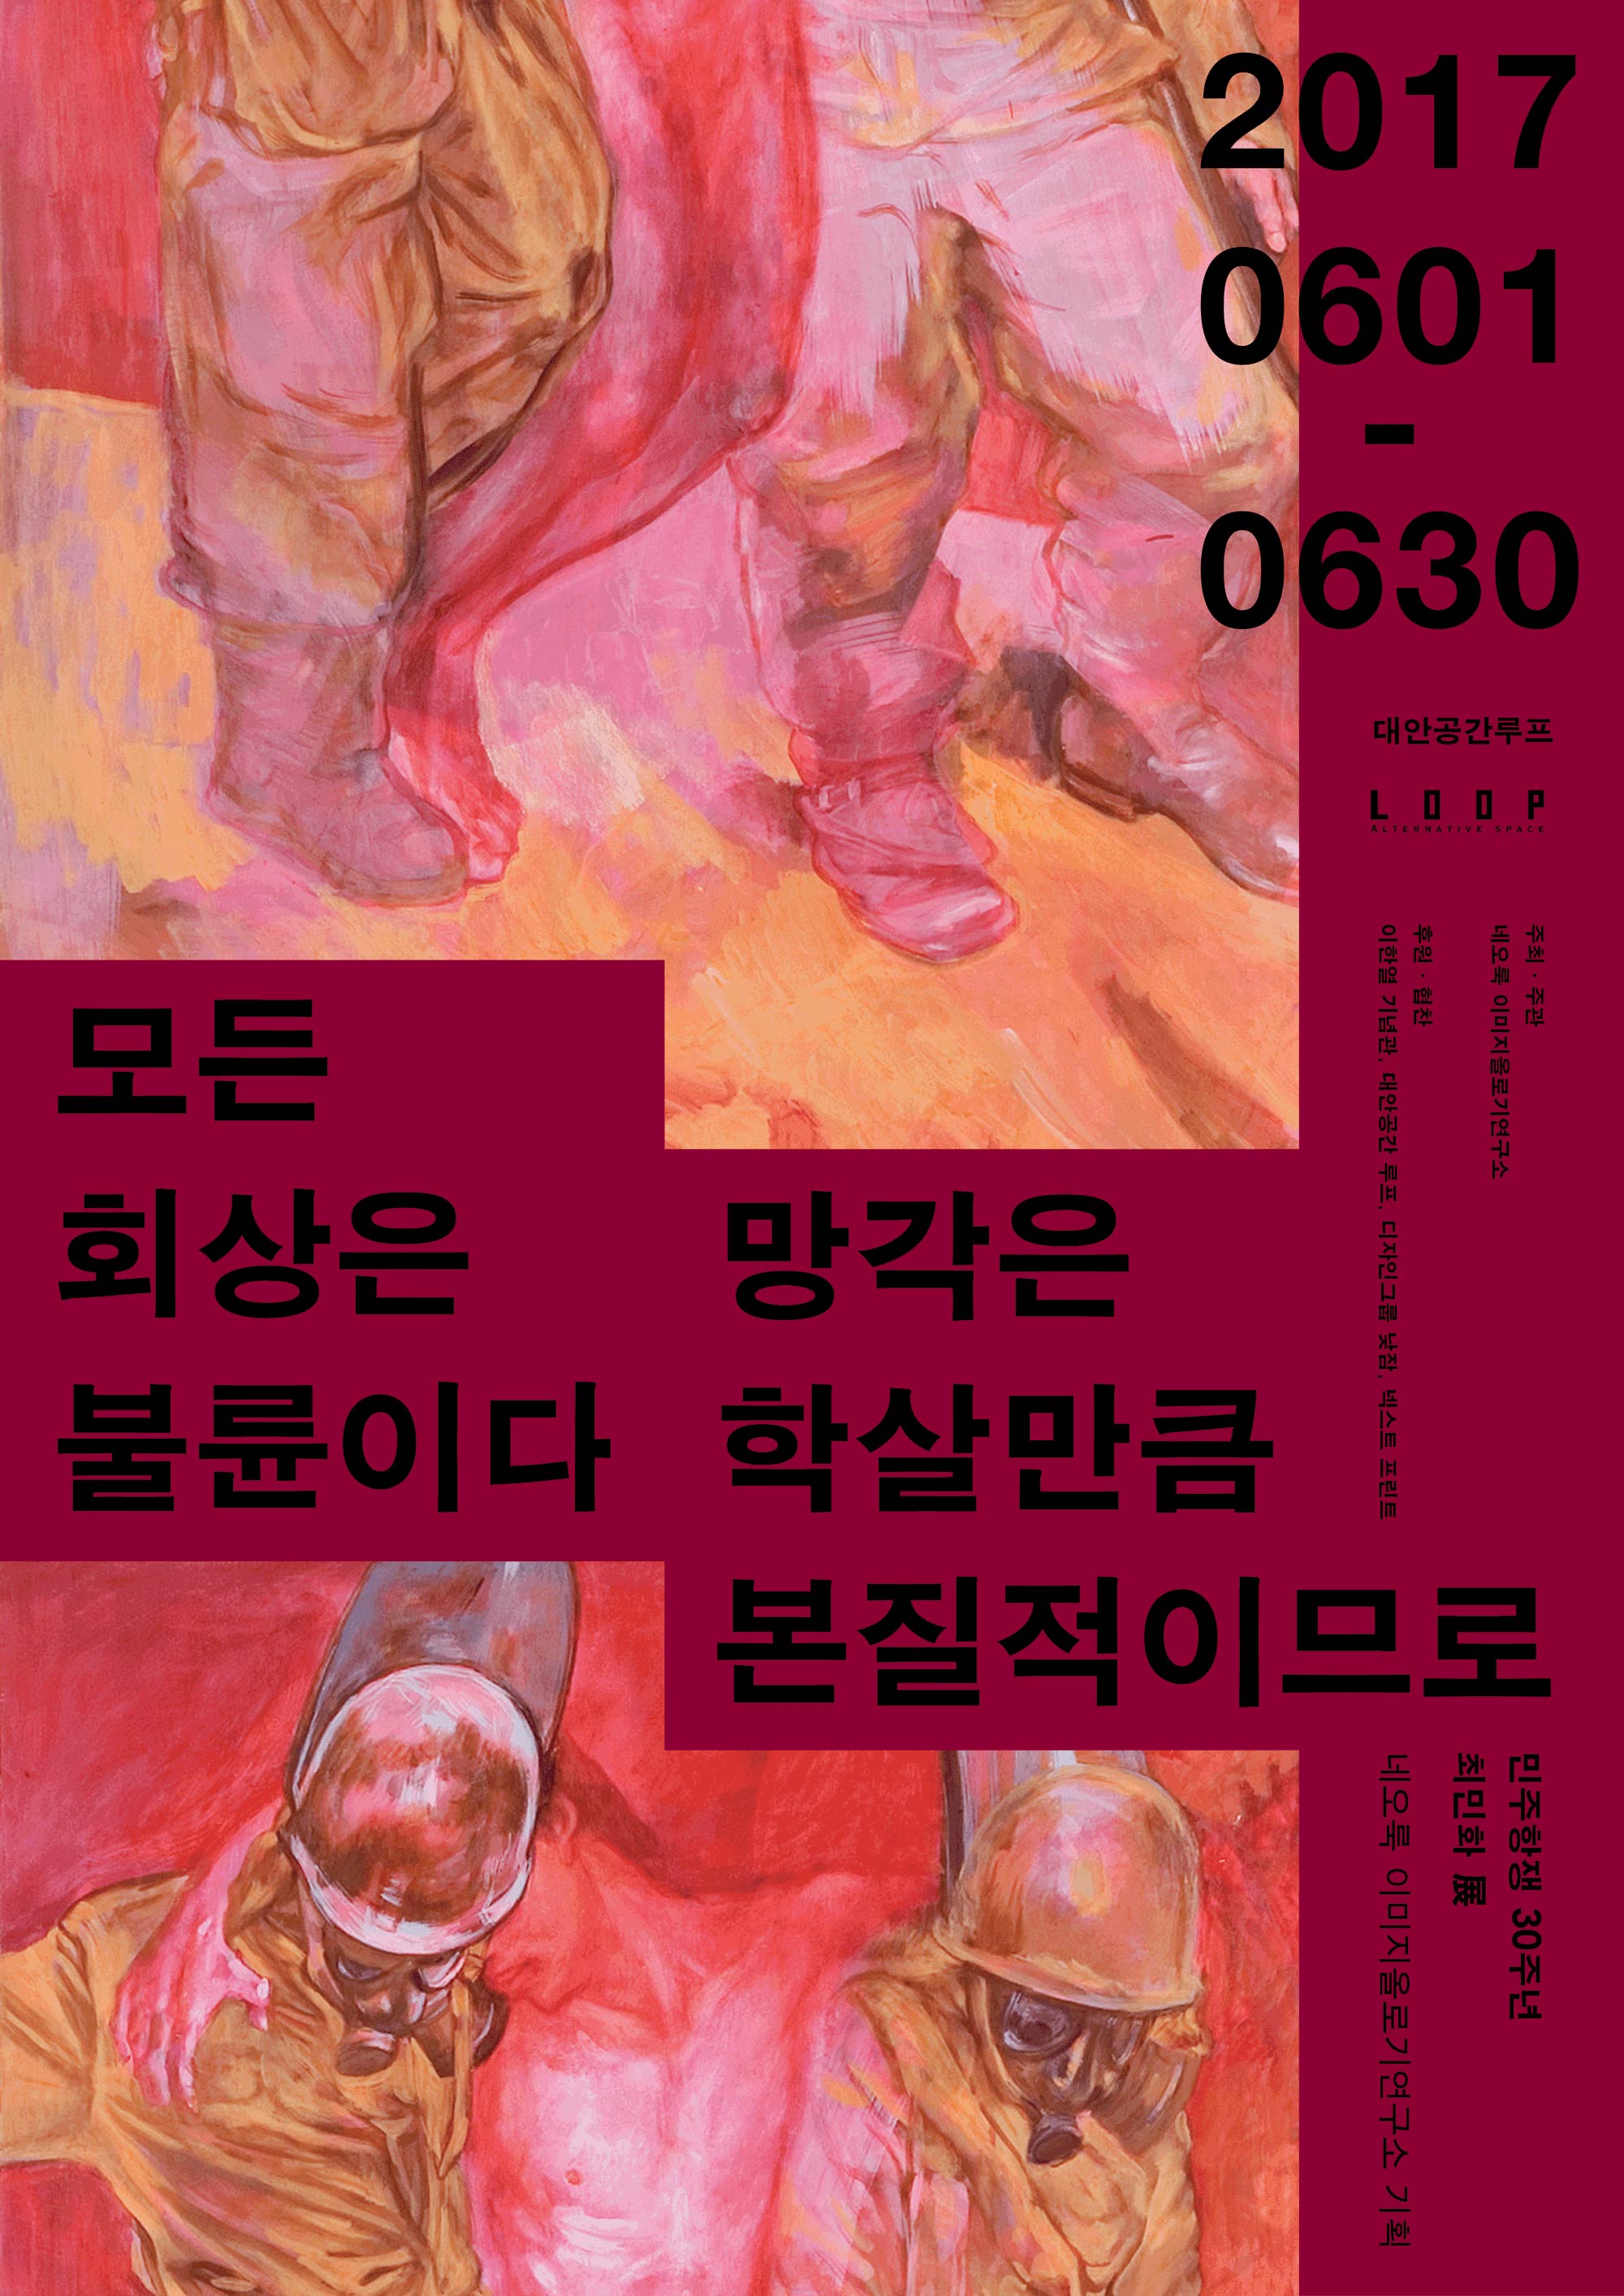 Min Hwa Choi Solo Exhibition